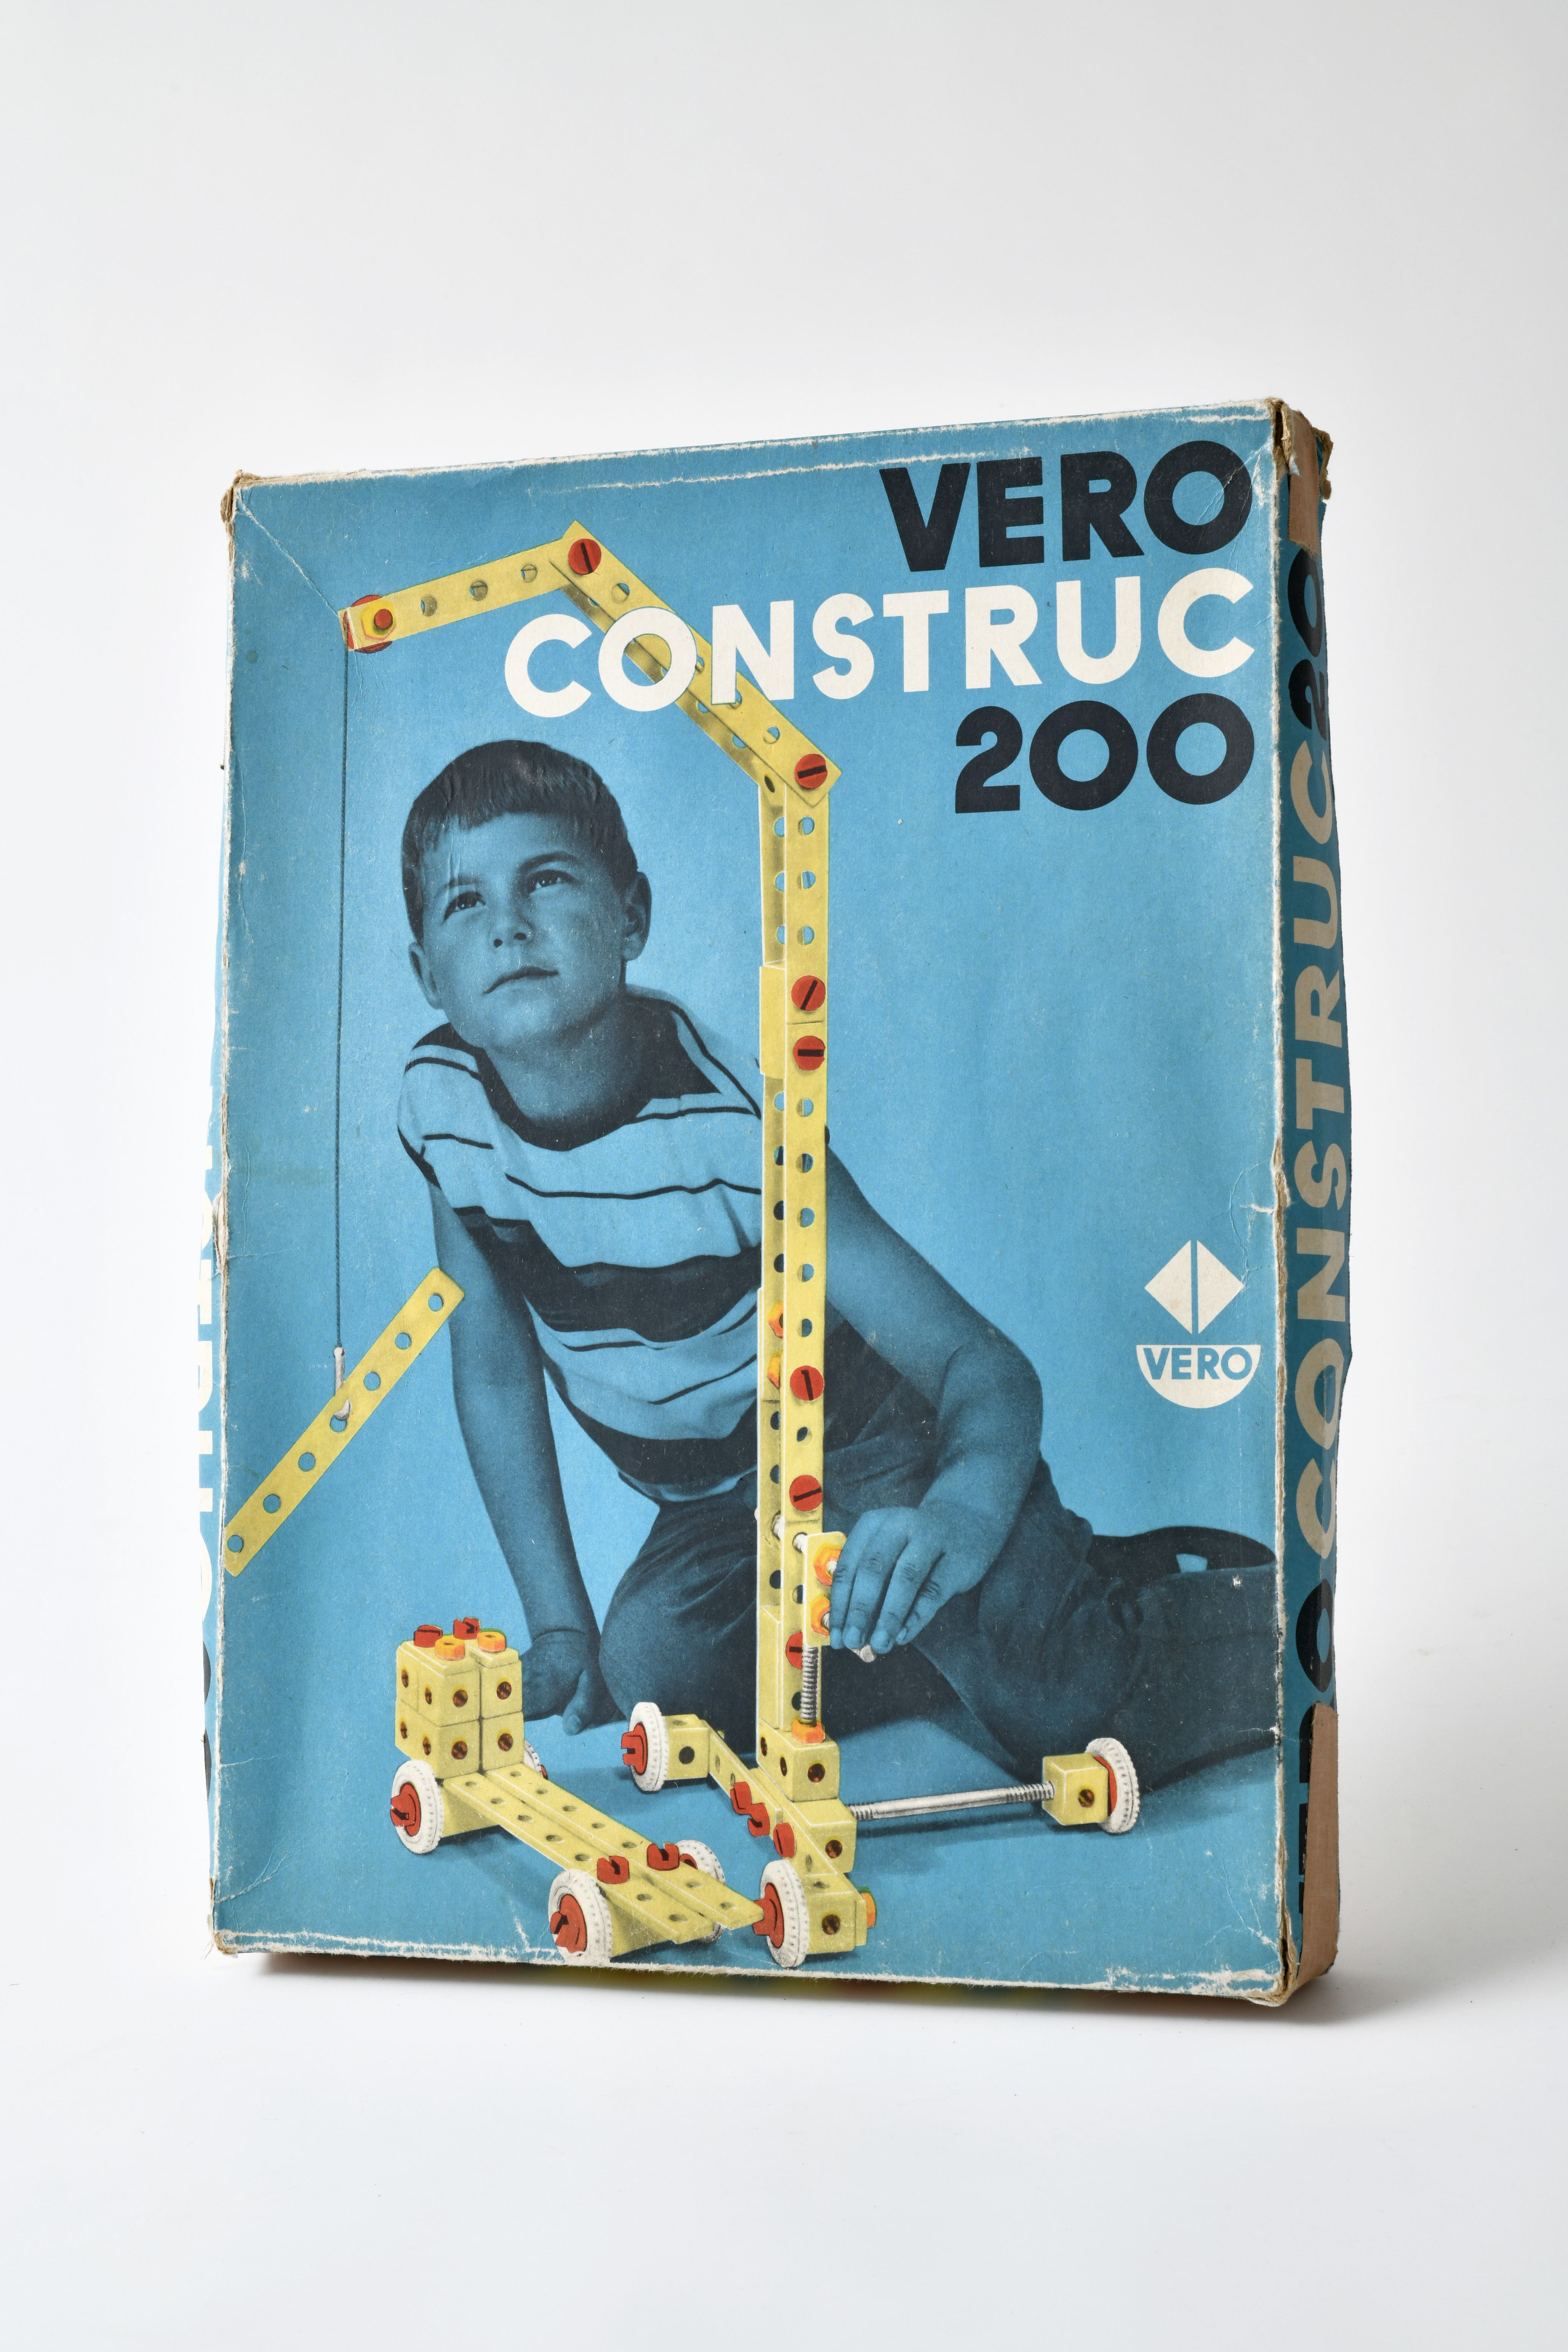 VERO Construc 200 in Originalverpackung (Museum Utopie und Alltag. Alltagskultur und Kunst aus der DDR CC BY-NC-SA)